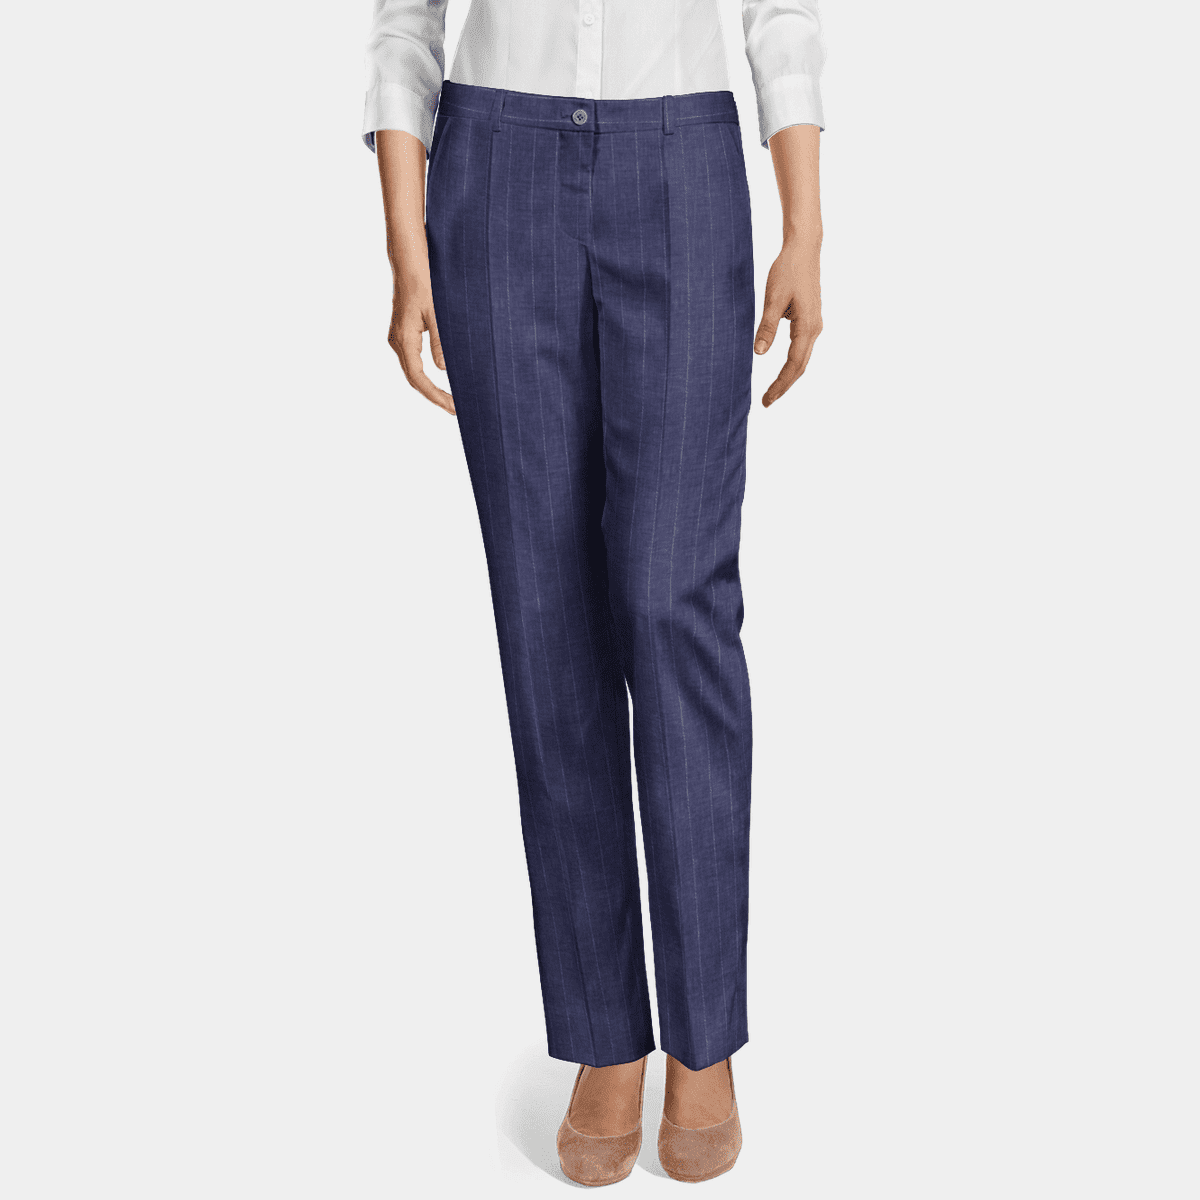 Navy blue linen flat-front slim fit Dress Pants